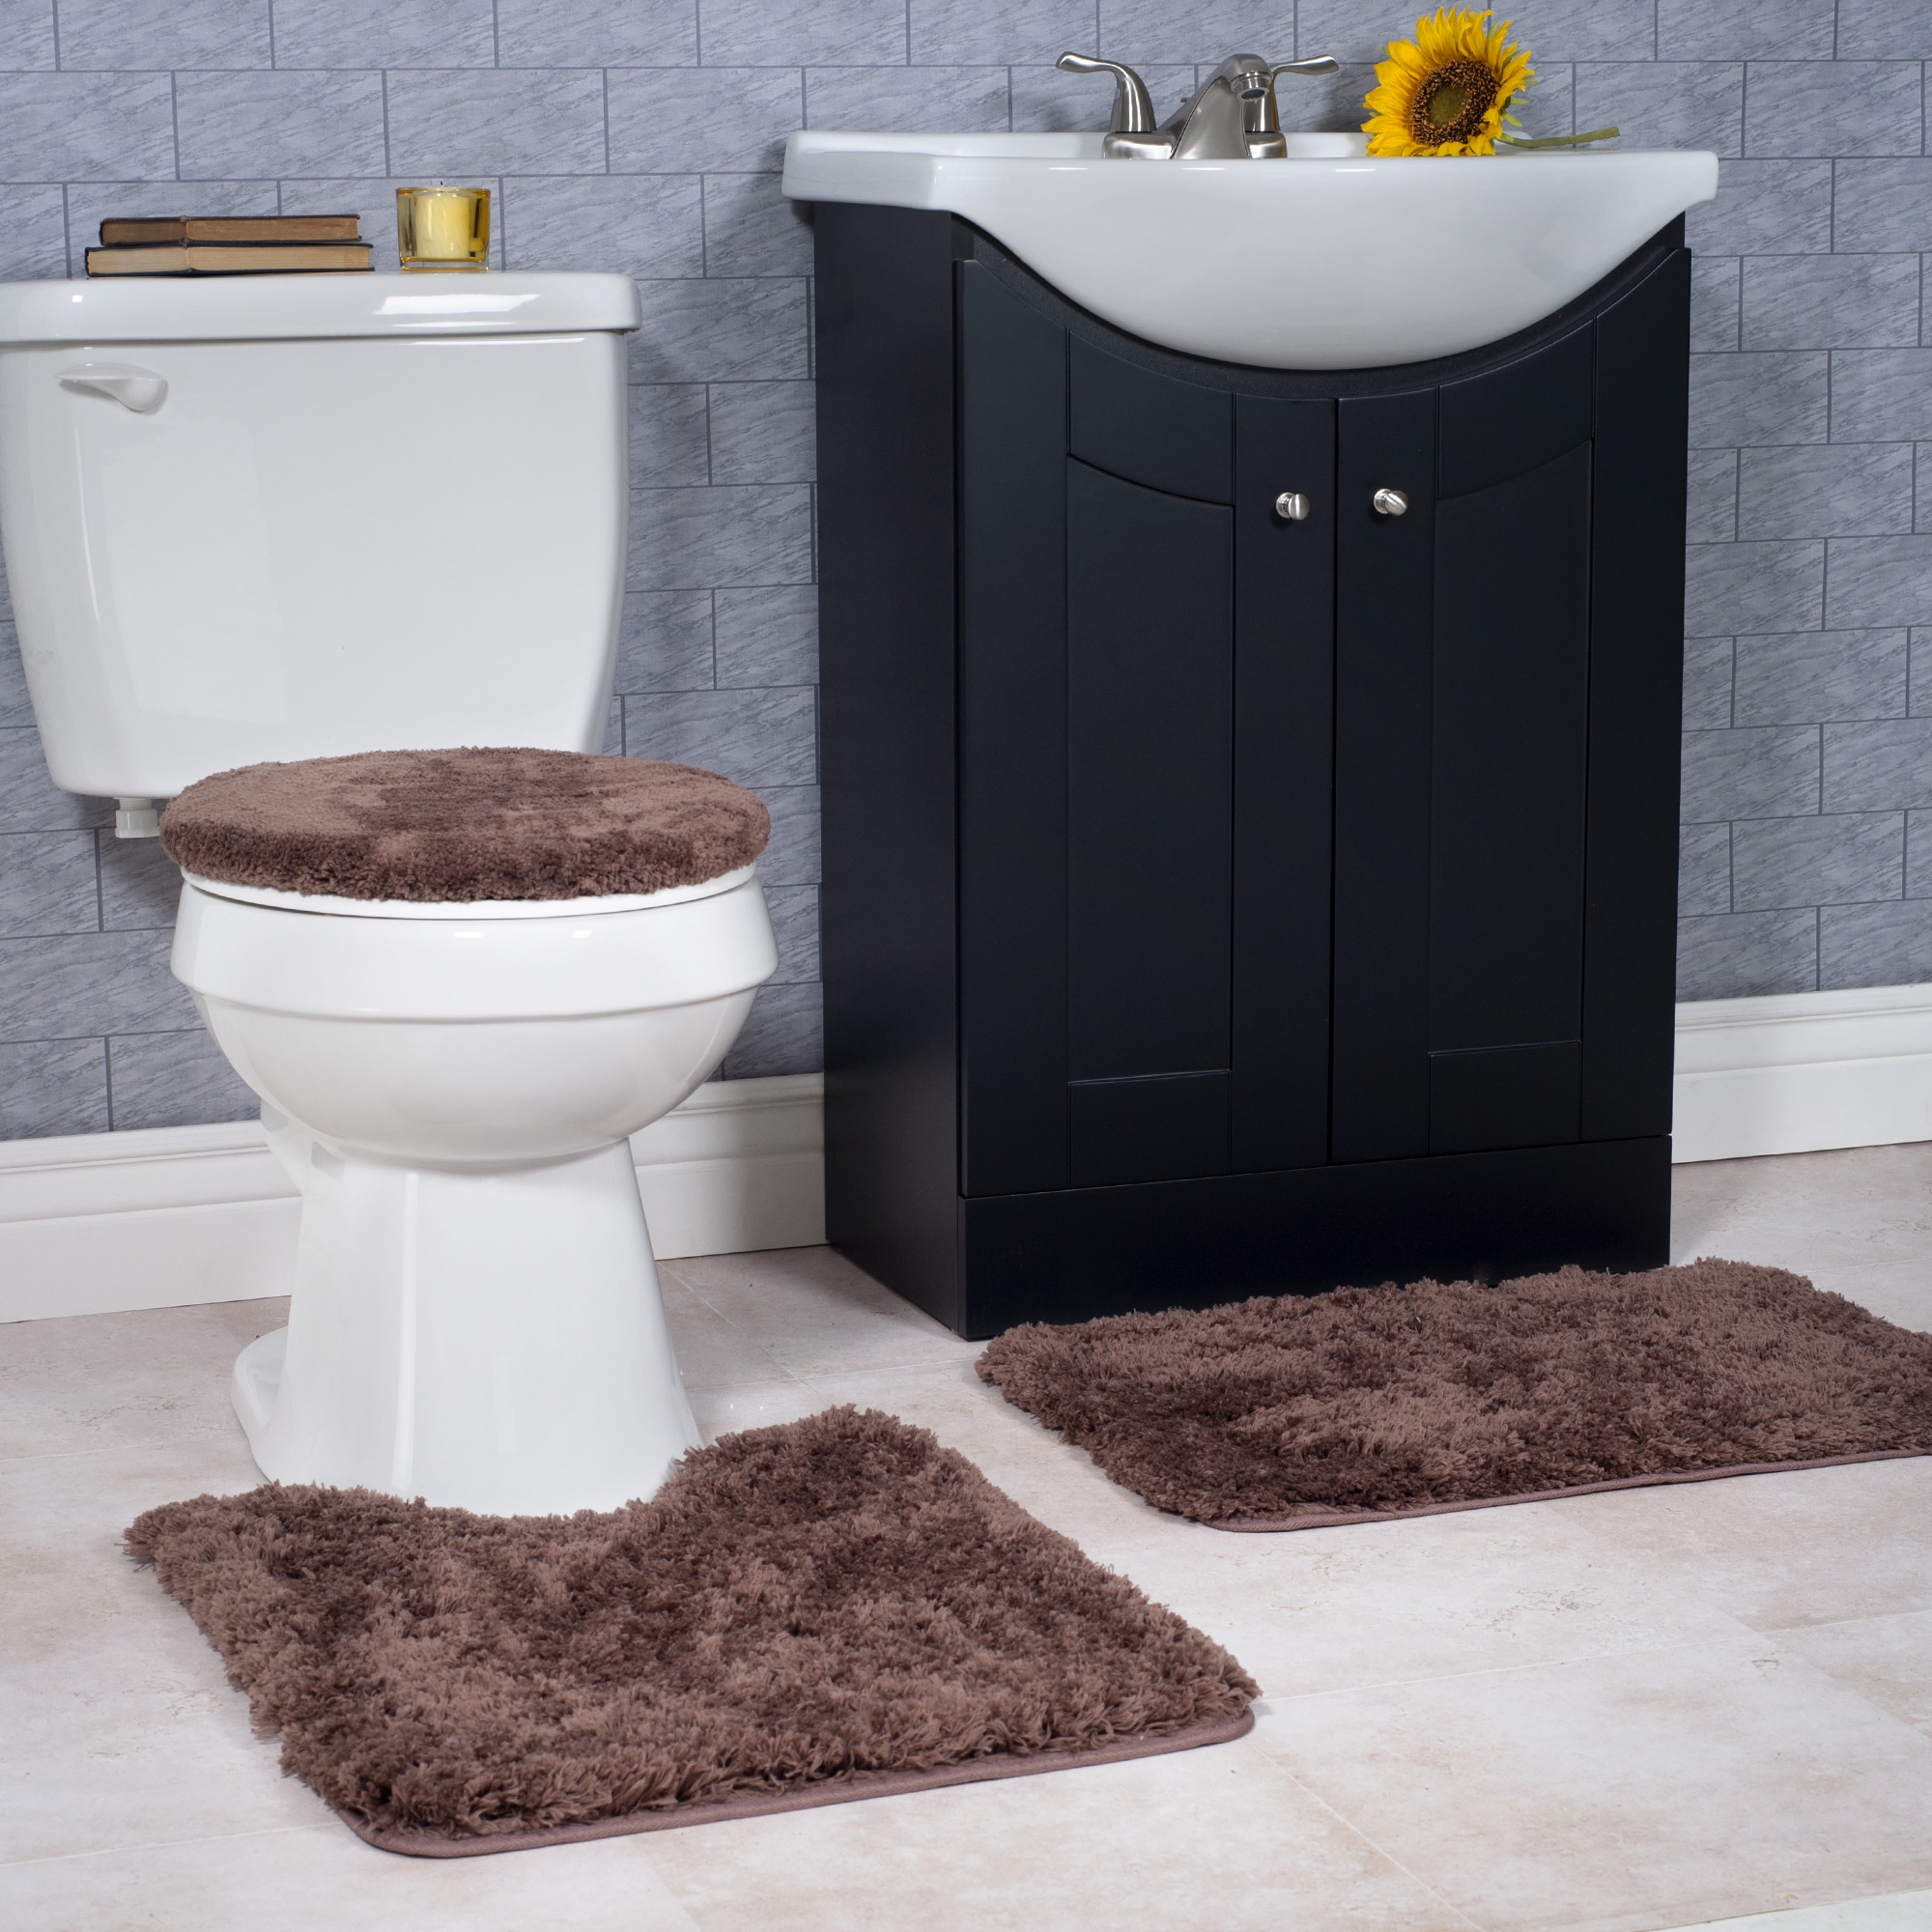 3PCS 3D Print Rug Toilet Lids Covers Non-slip Bathroom Bath Floor Bath Decor Set 